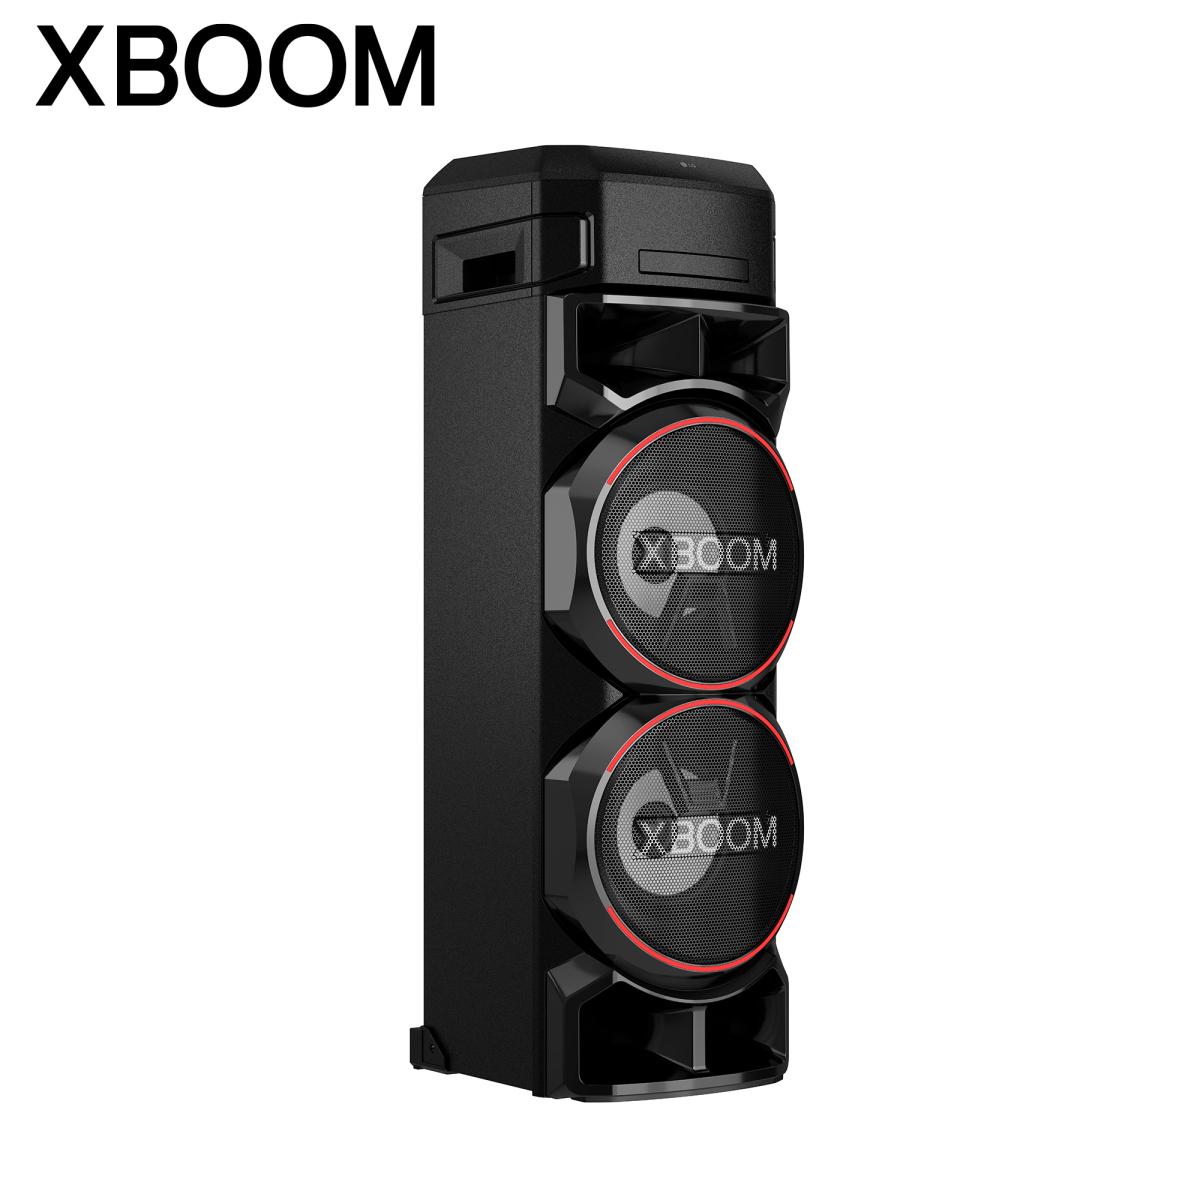 LG DJスタイル スピーカーシステム XBOOM ON9